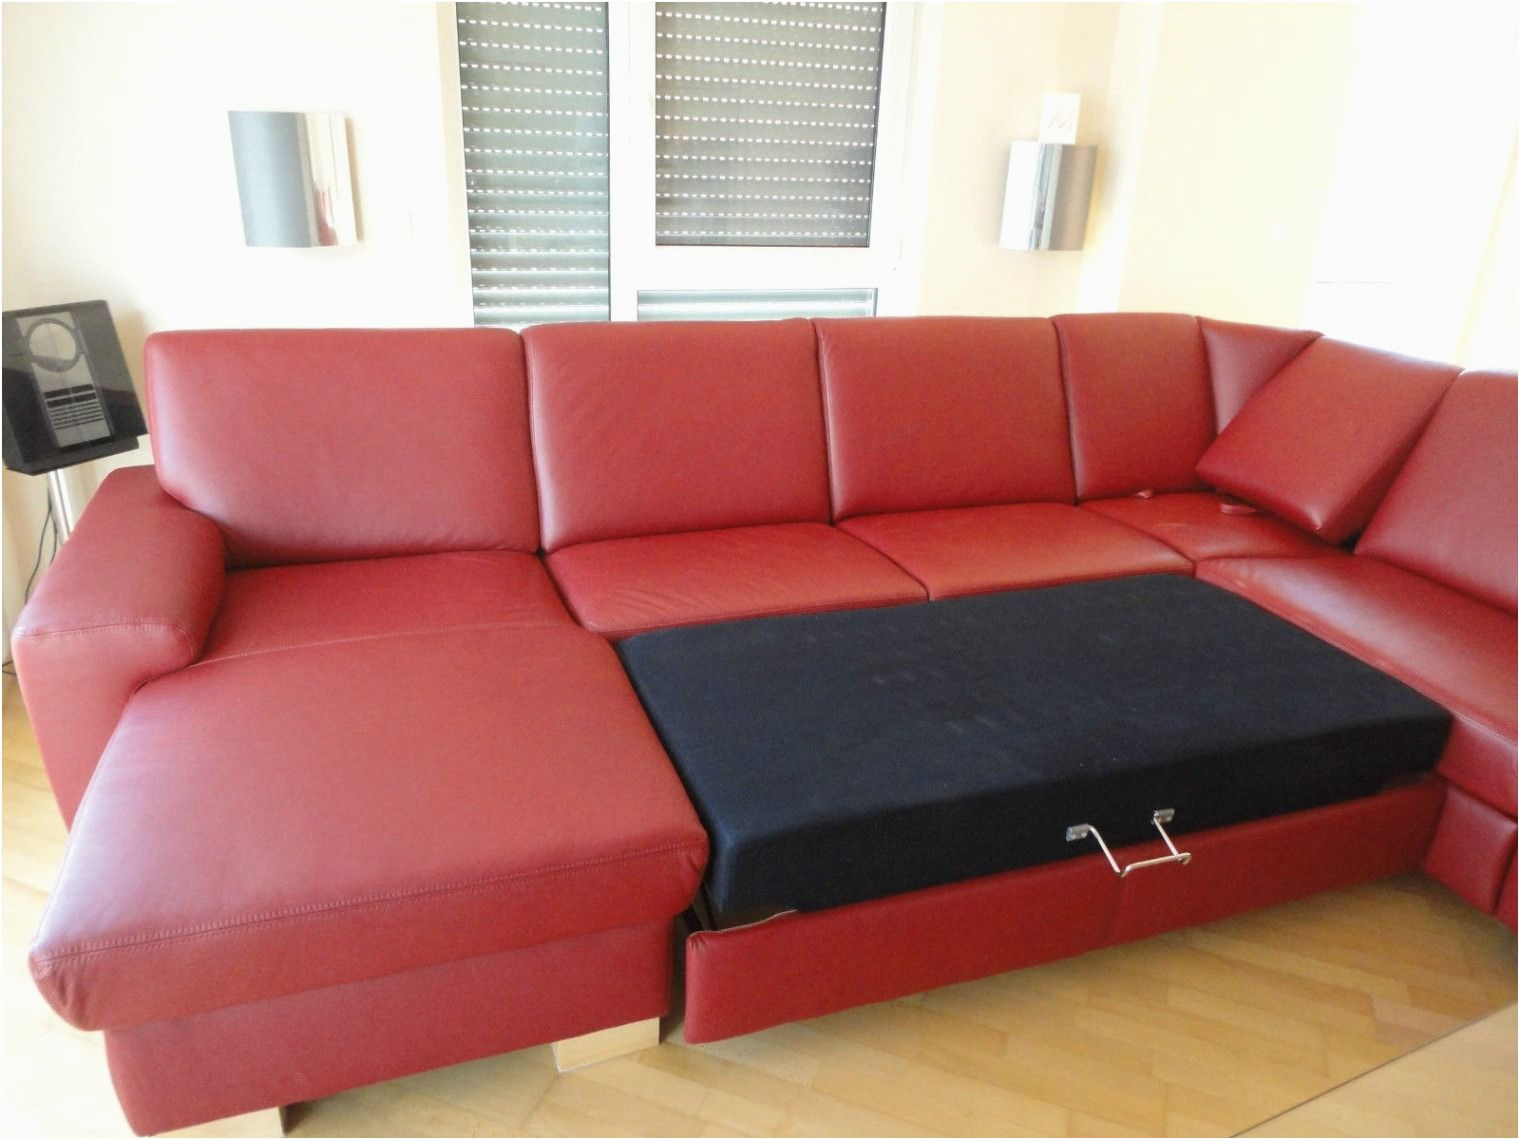 otto moebel couchgarnituren suche sofa best schlafsofa matratze luxus rote sofa 0d archives einzigartig